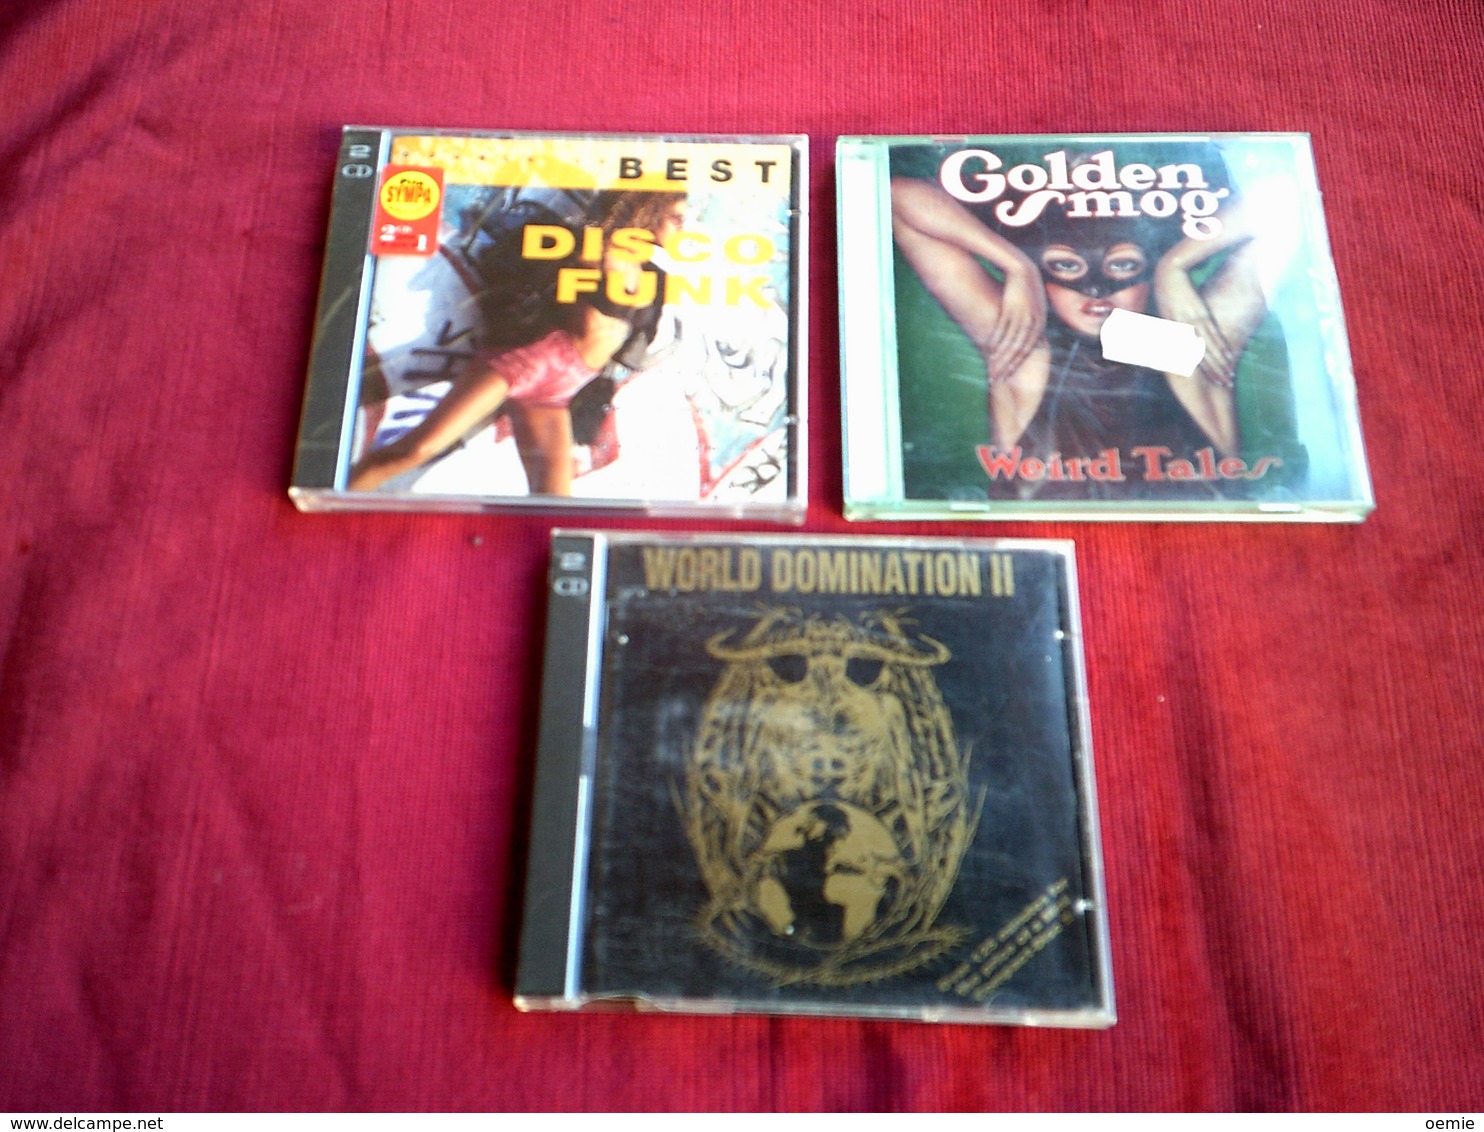 COLLECTION DE 3 CD ALBUM DE VARIOUS ARTISTES ° DISCO FUNK 2CD + WORLD DOMINATION 2 CD + GOLDEN SMOG - Reggae